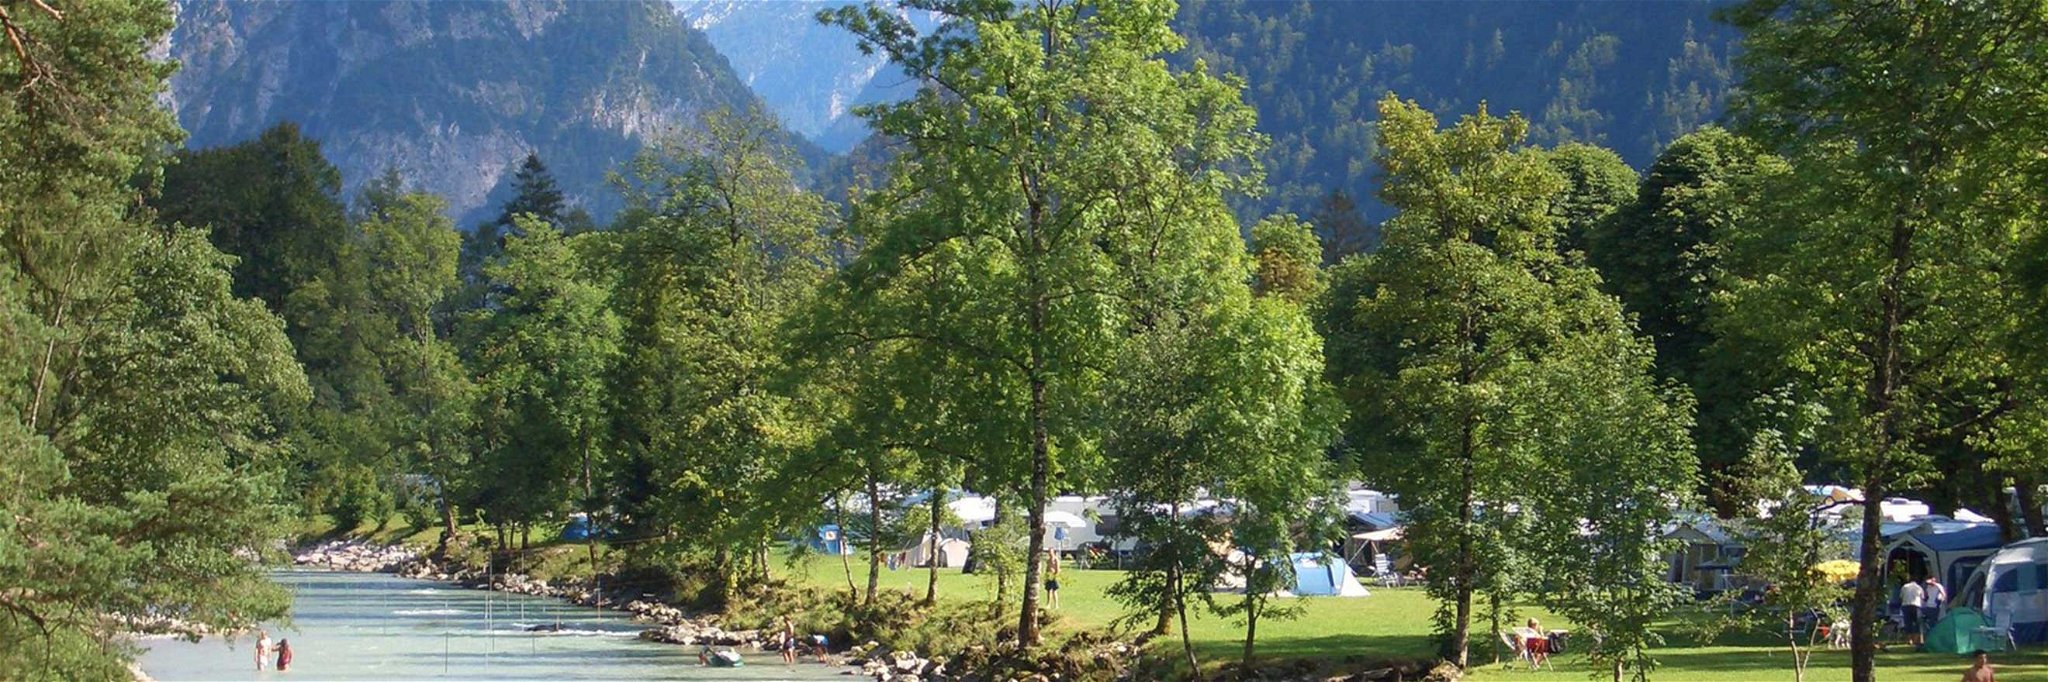 Platz 2 im Ranking geht an Österreich: Camping Grubhof in Salzburg